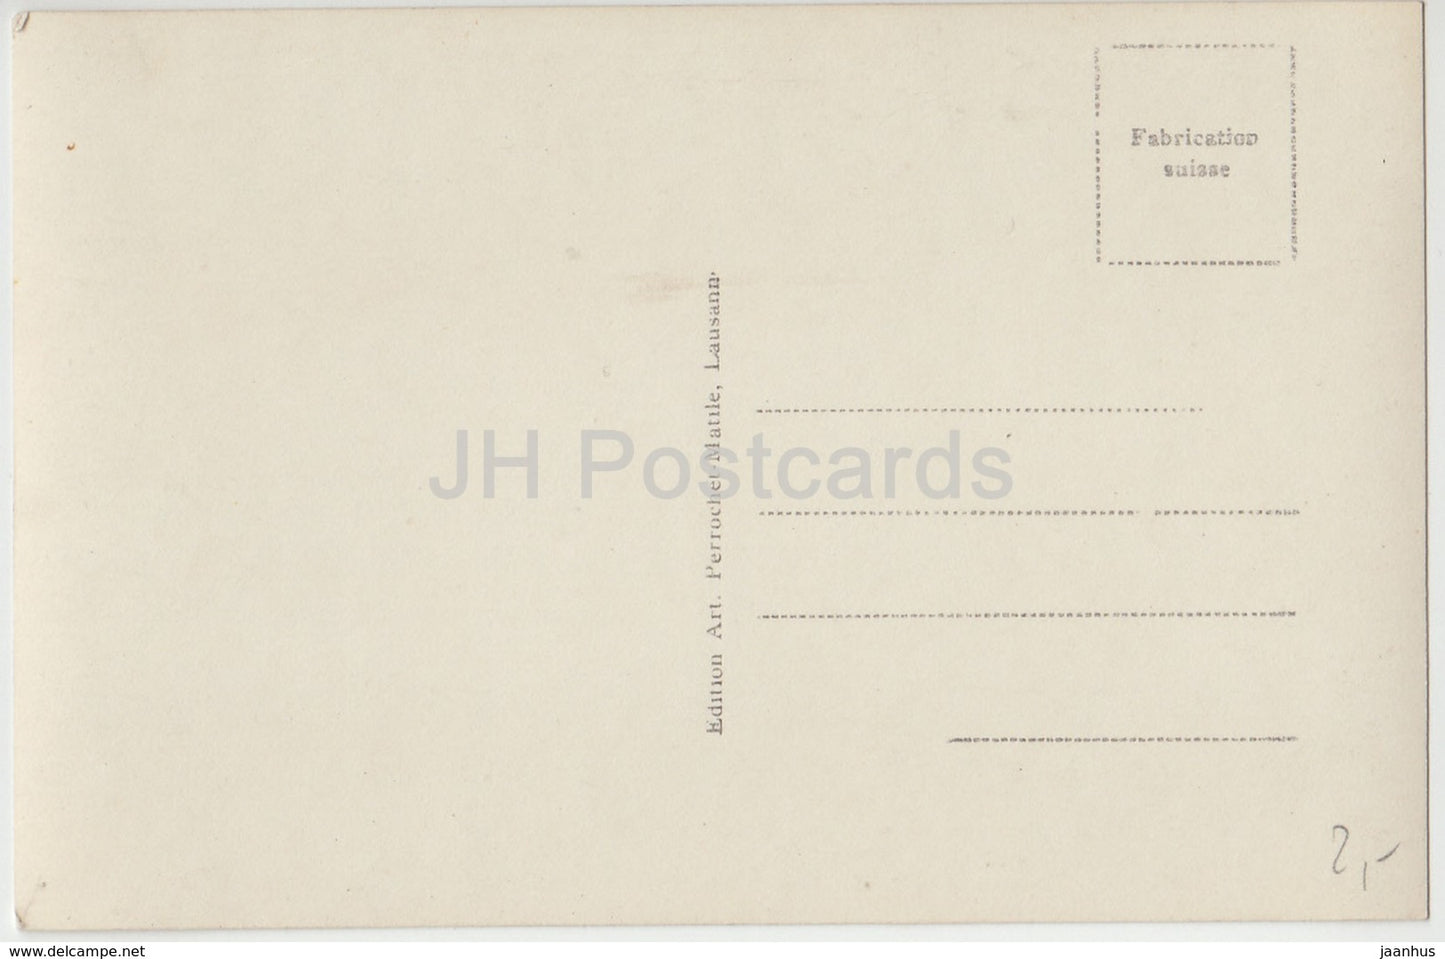 Le Bouveret et le Gramont - 2296 - Suisse - carte postale ancienne - inutilisée